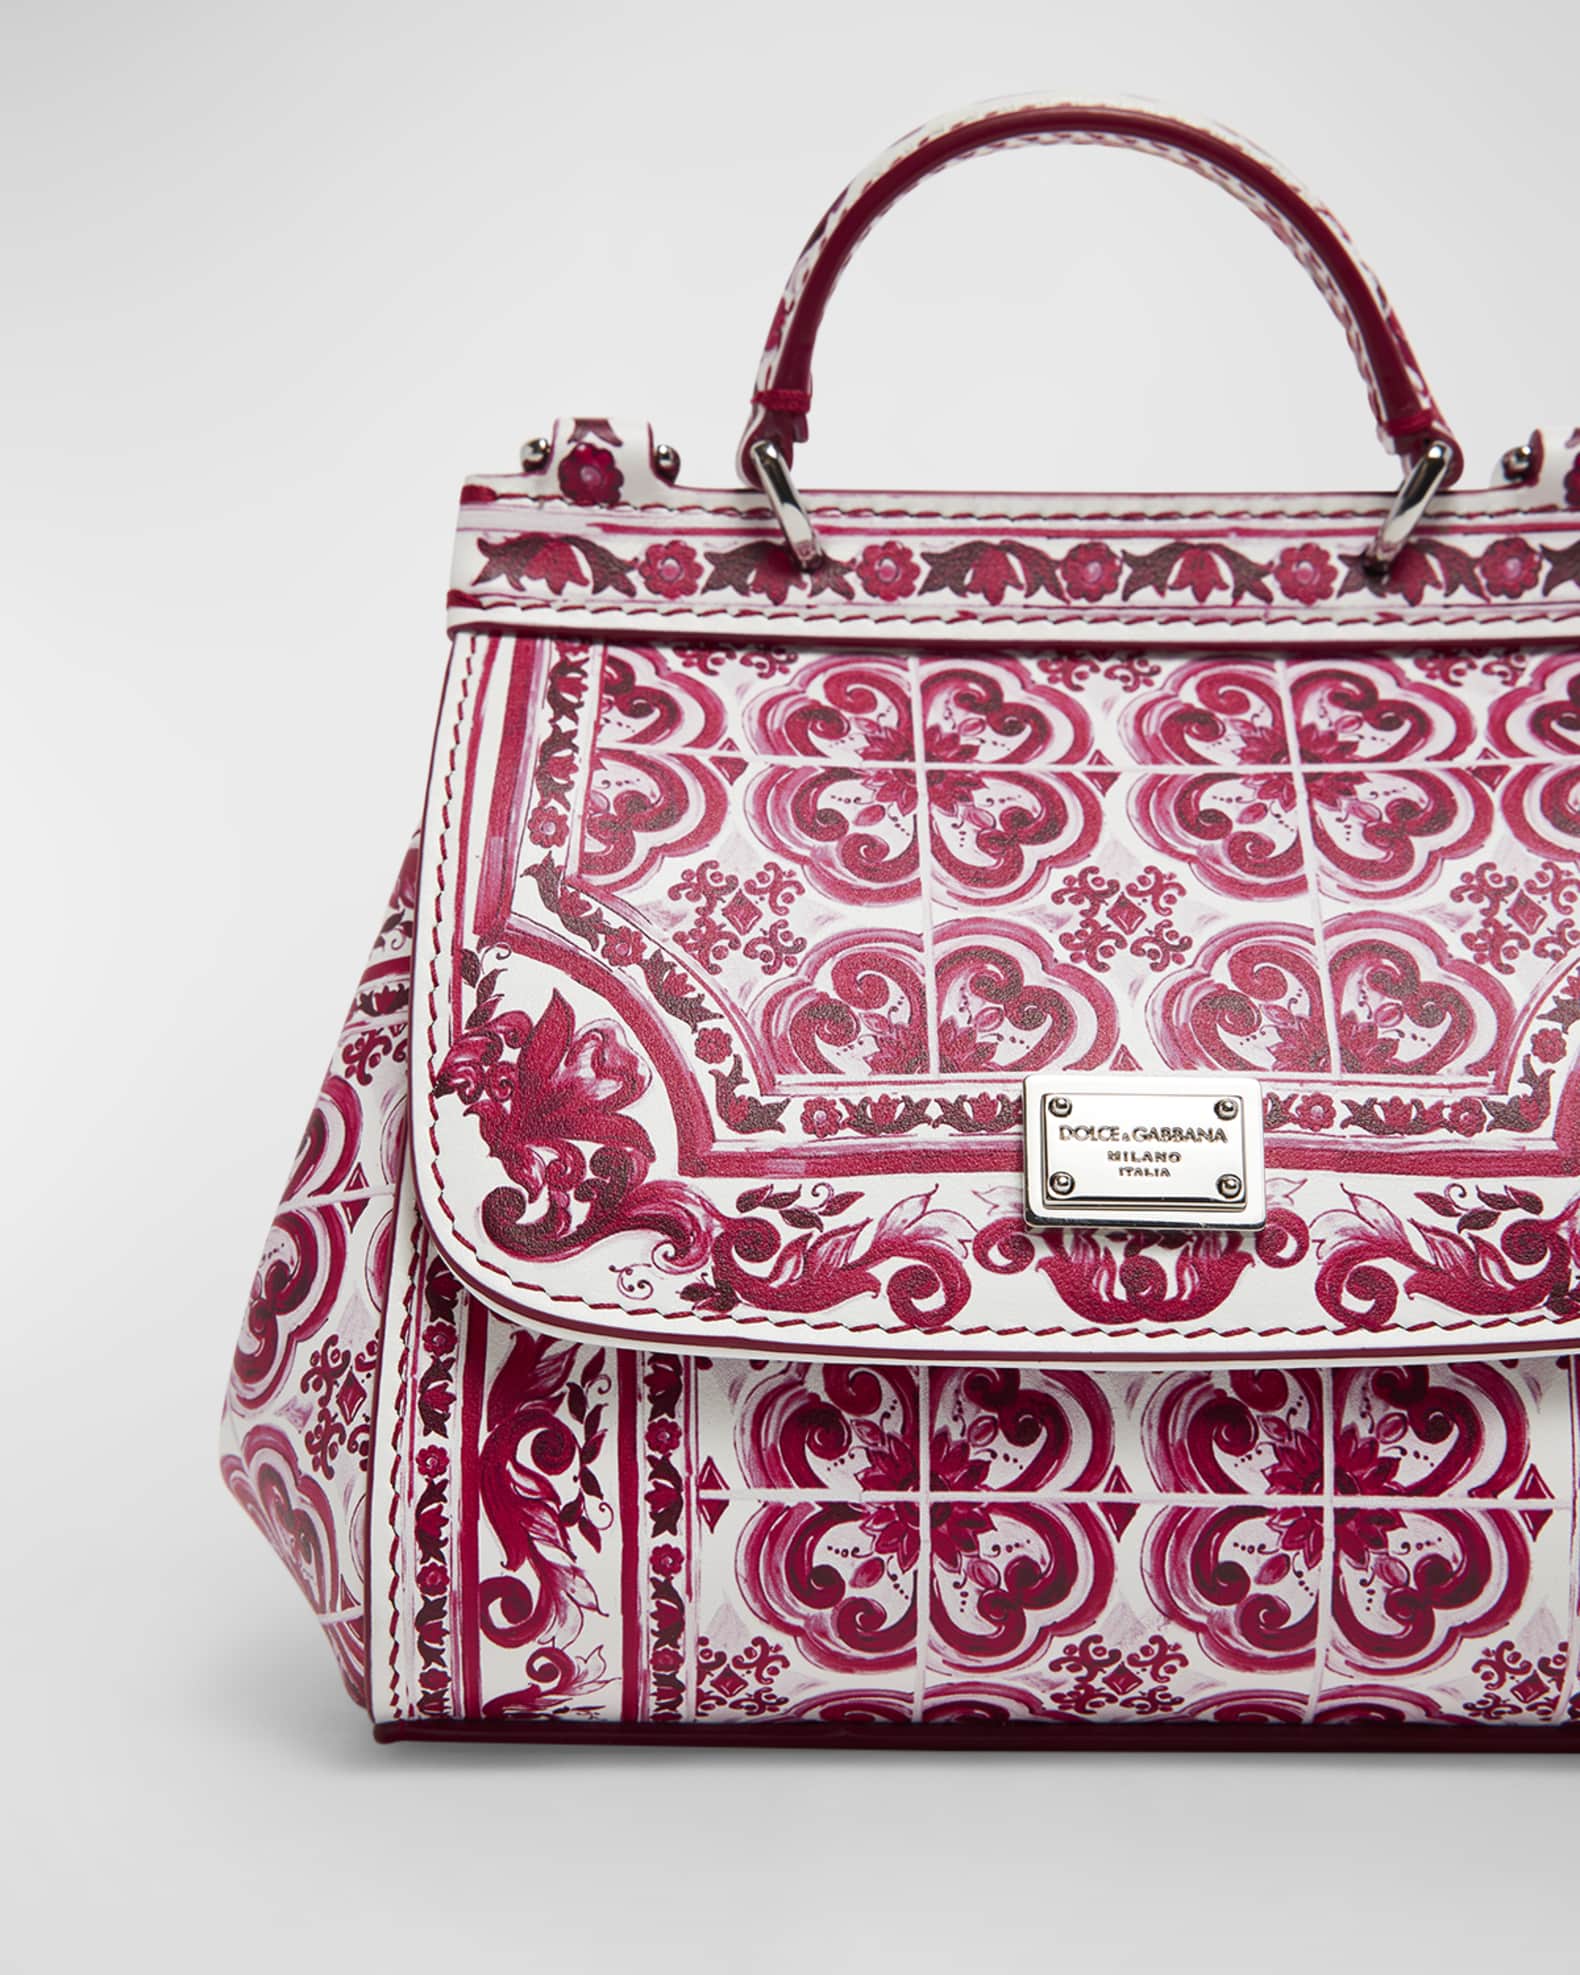 Dolce & Gabbana Sicily Mini Bag